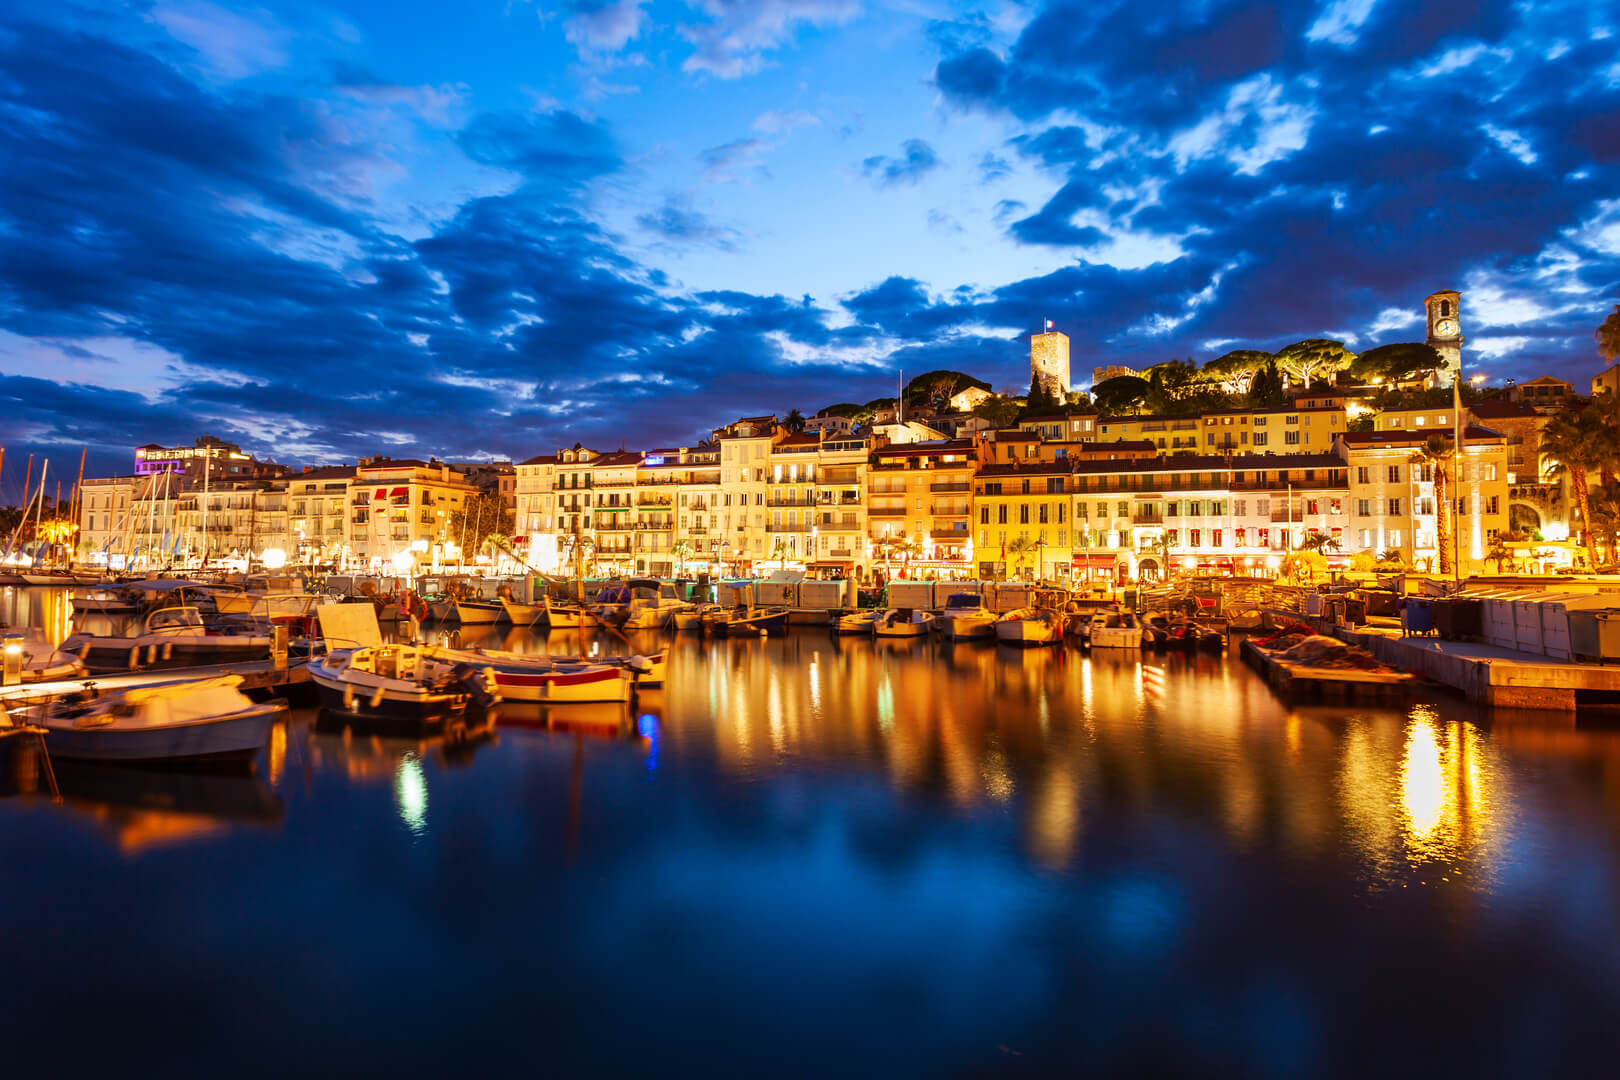 Vista panoramica aerea del porto di Cannes di notte. Cannes è una città situata sulla Riviera francese o Costa Azzurra nel sud della Francia.